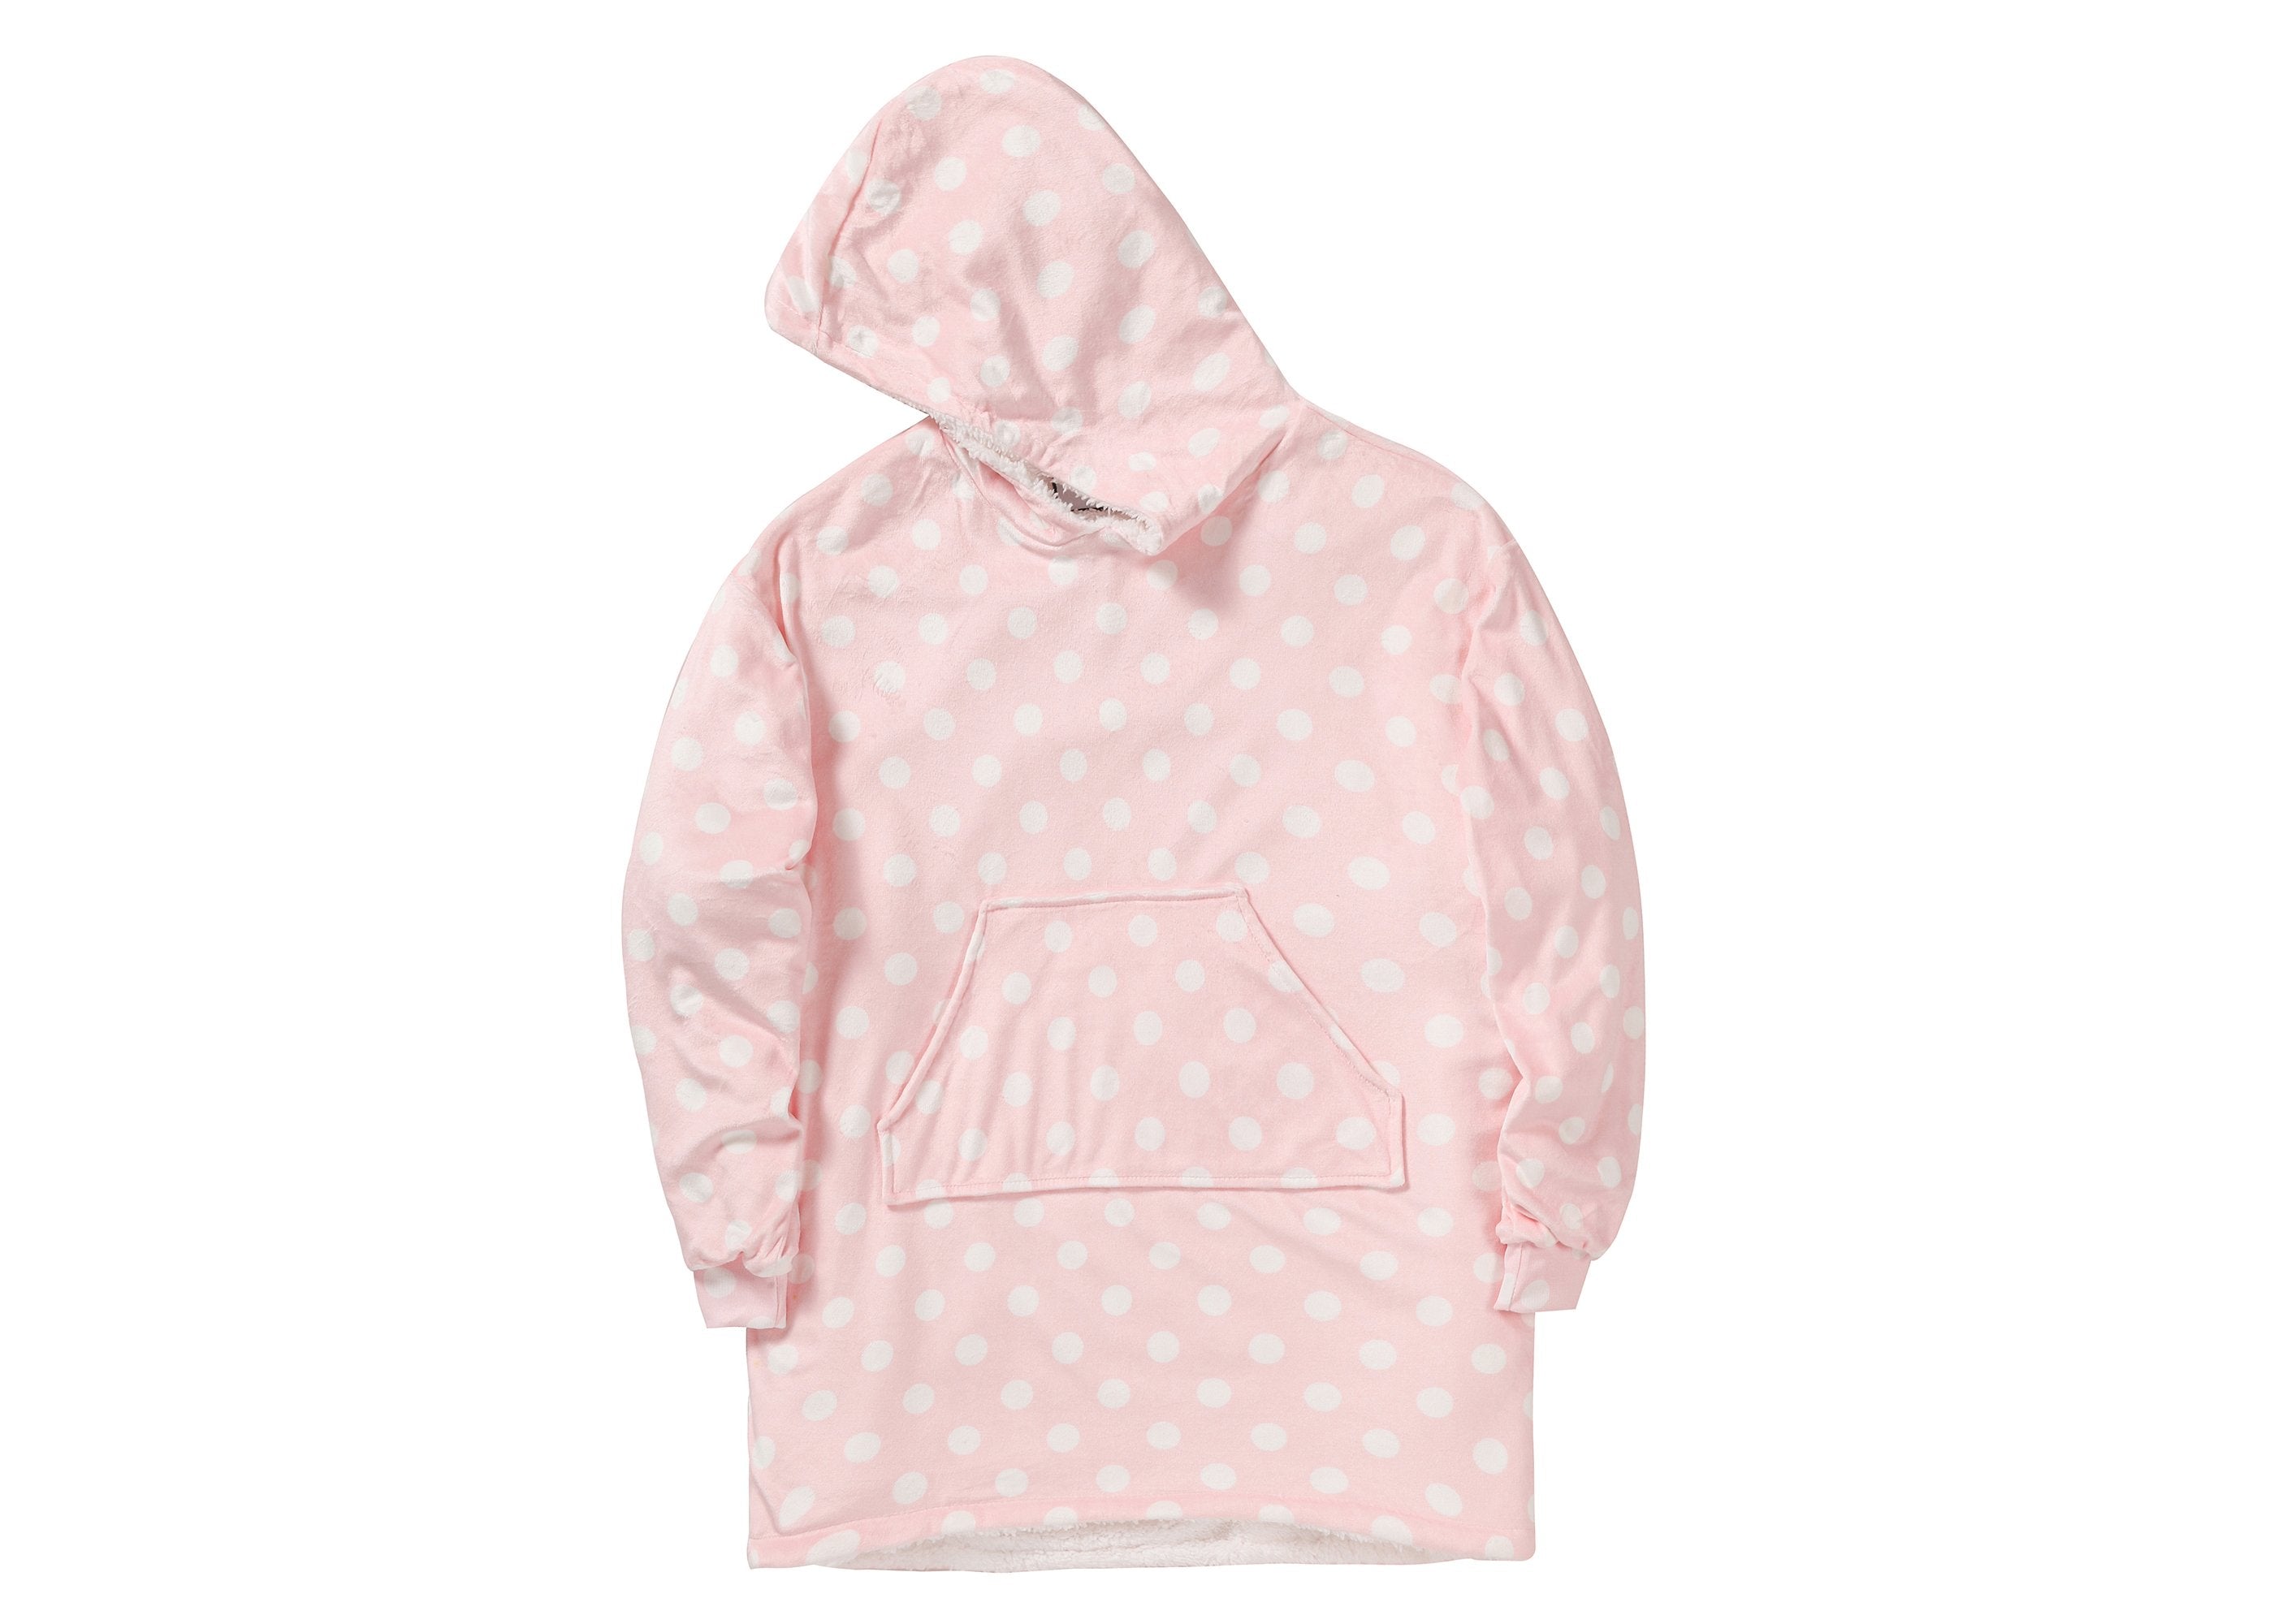 TARRAMARRA® Kids Reversible Hoodie Blanket Pink Polka Dot